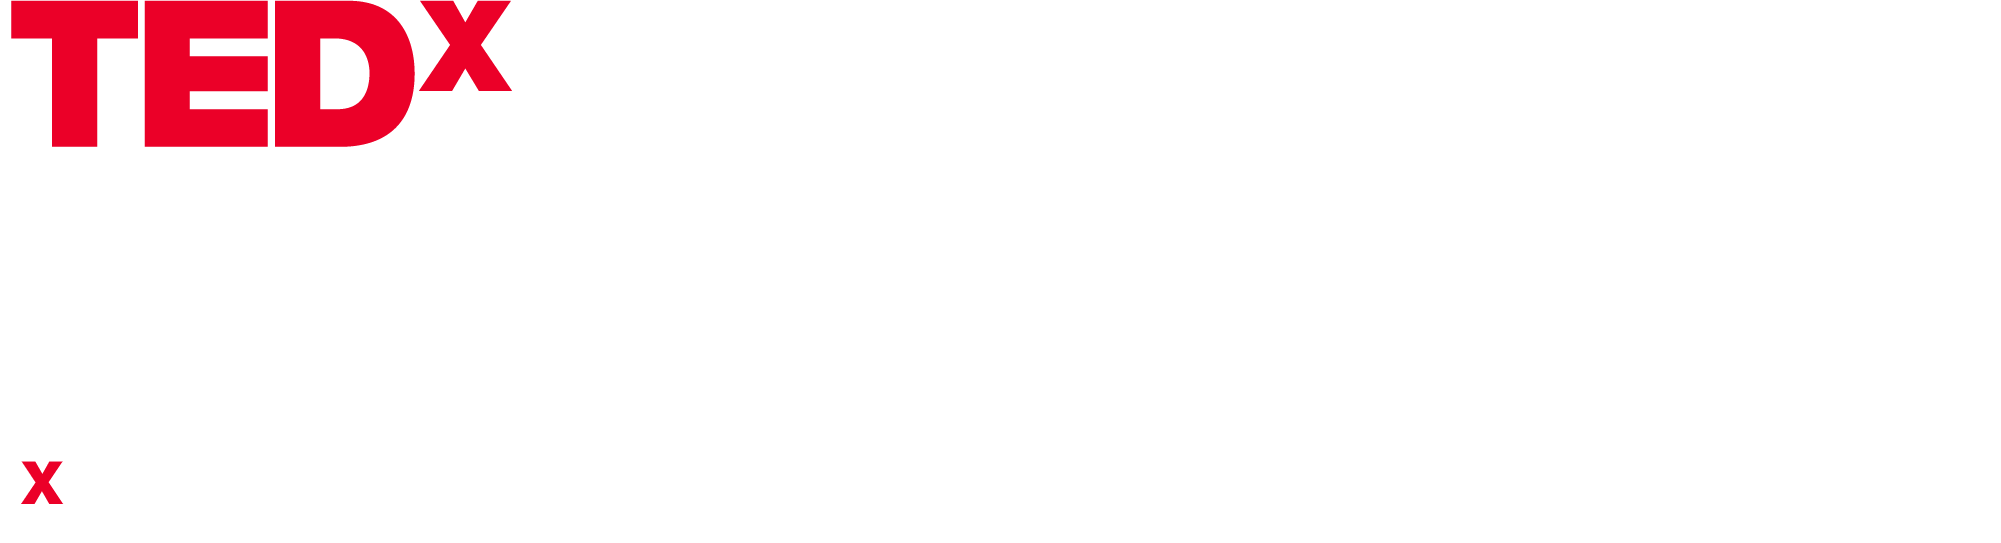 Tedx University of Leeds Logo